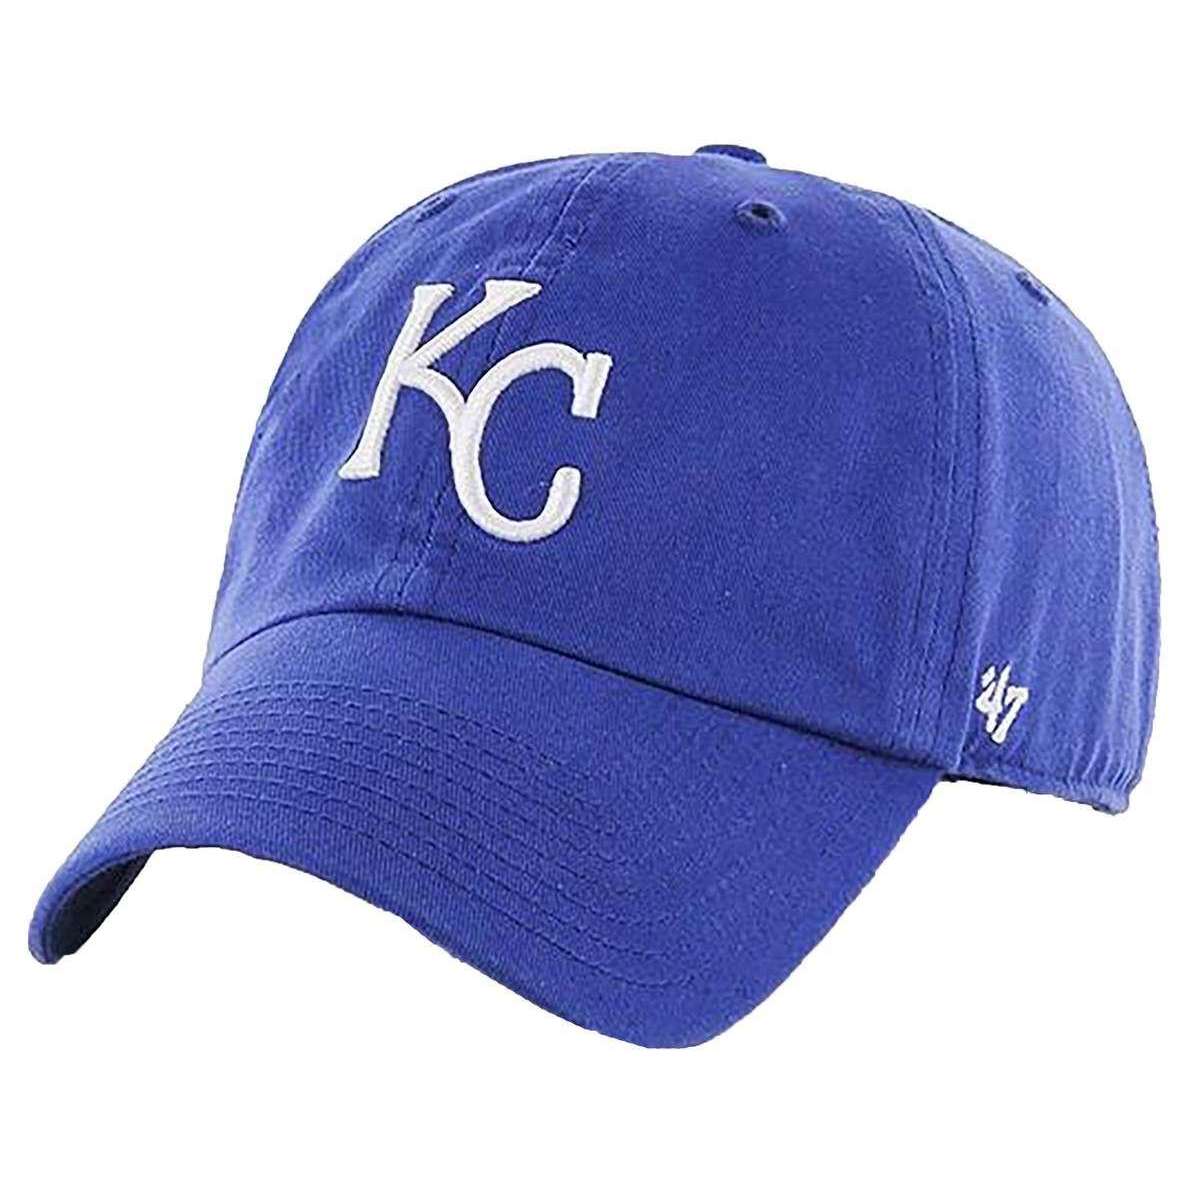 Kansas City Royals hats